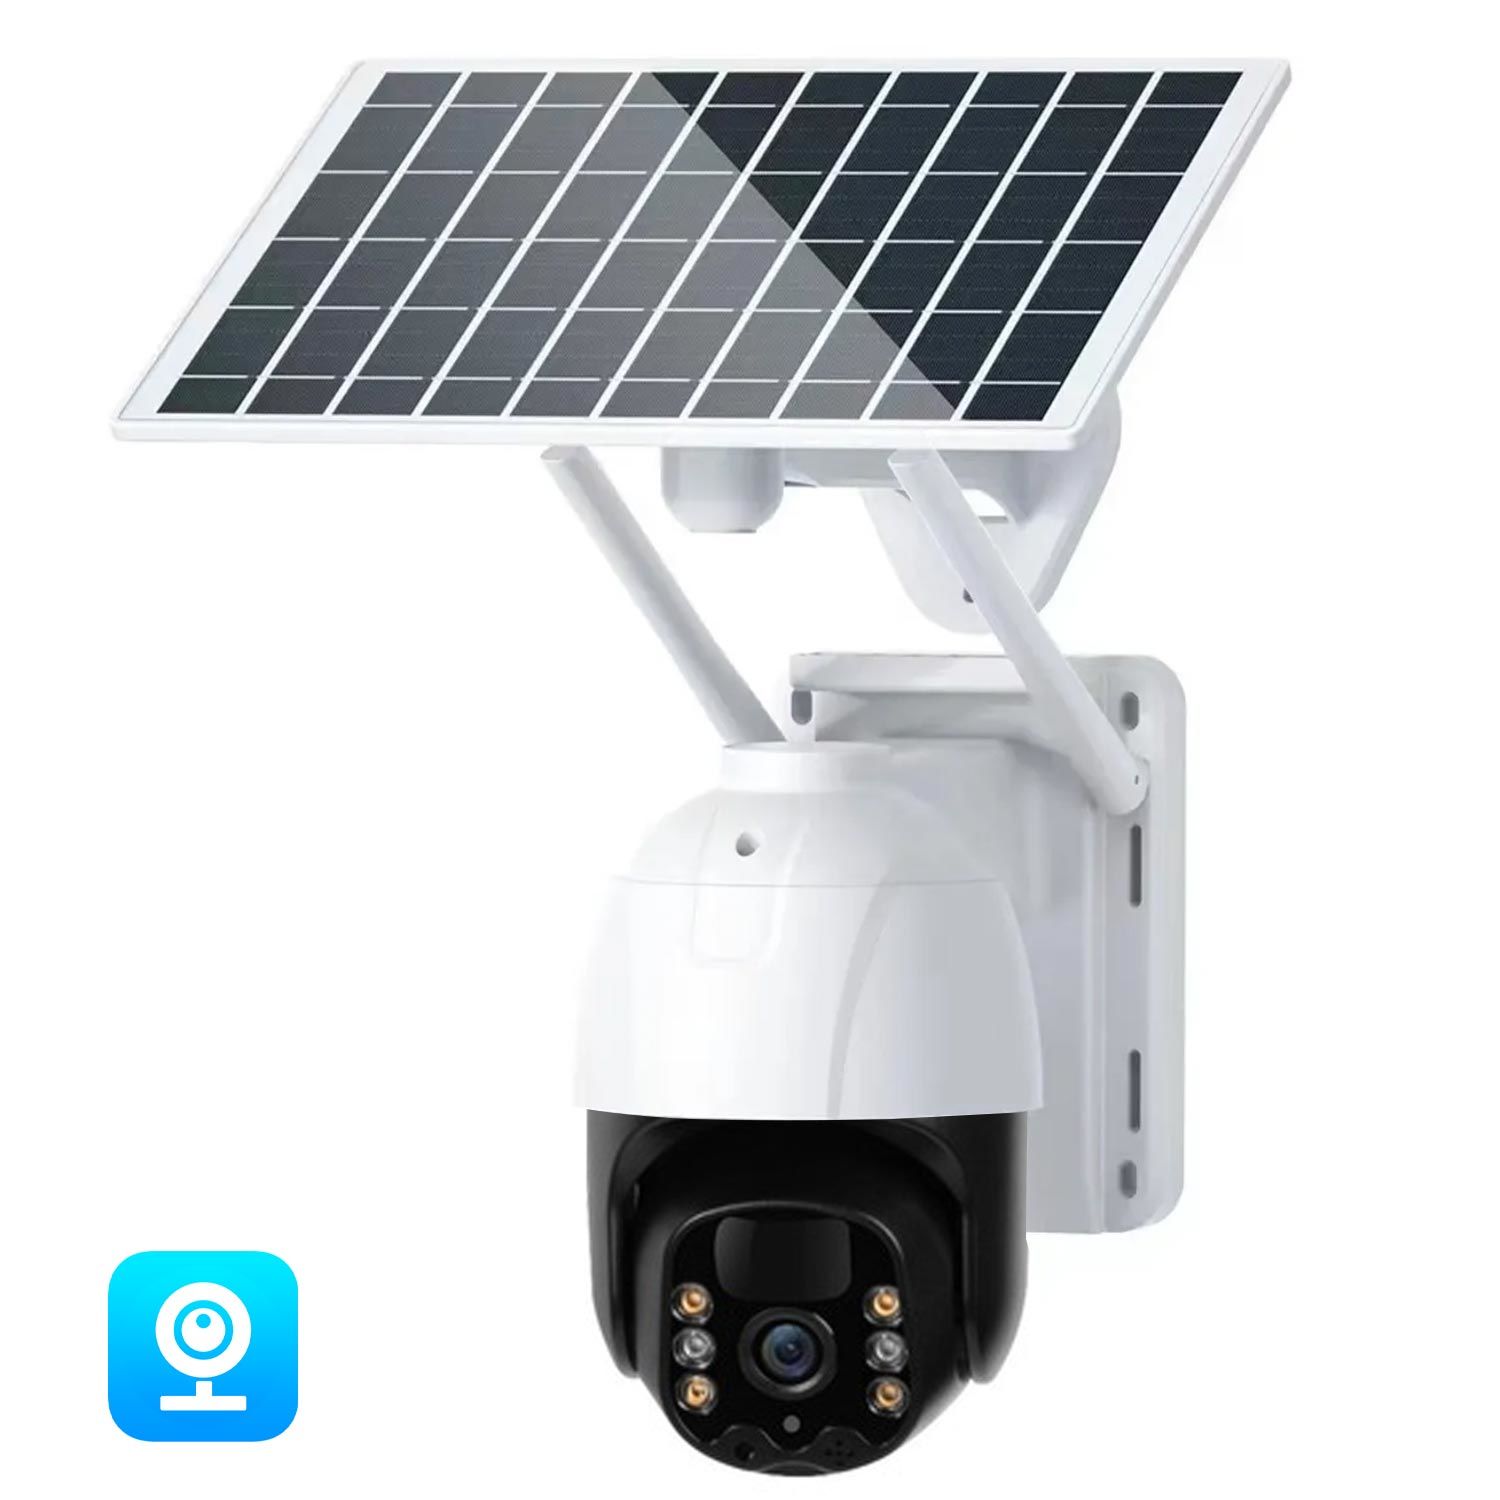 AVENİR AV-M11 Solar Smart Güvenlik Kamerası 4G Sim 3mp Wi-Fi Ptz Renkli Gece Görüş Harekete Duyarlı